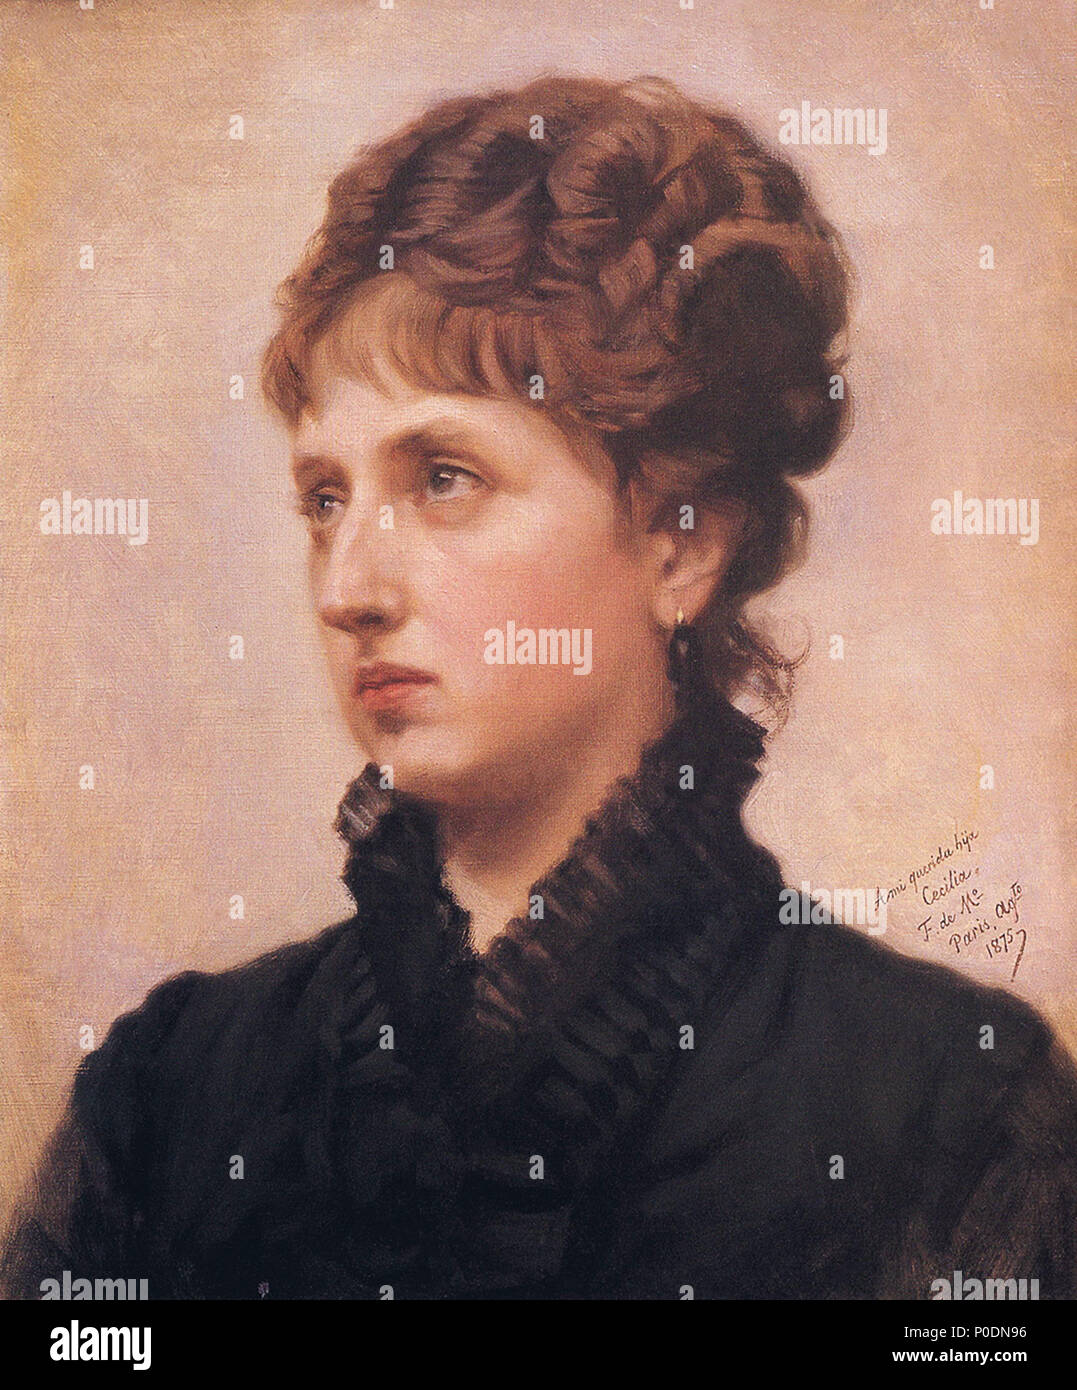 32 F. de Madrazo - 1875, Cecilia de Madrazo y Garreta (Colección insbesondere, Bilbao, 48 x 38 cm) Stockfoto